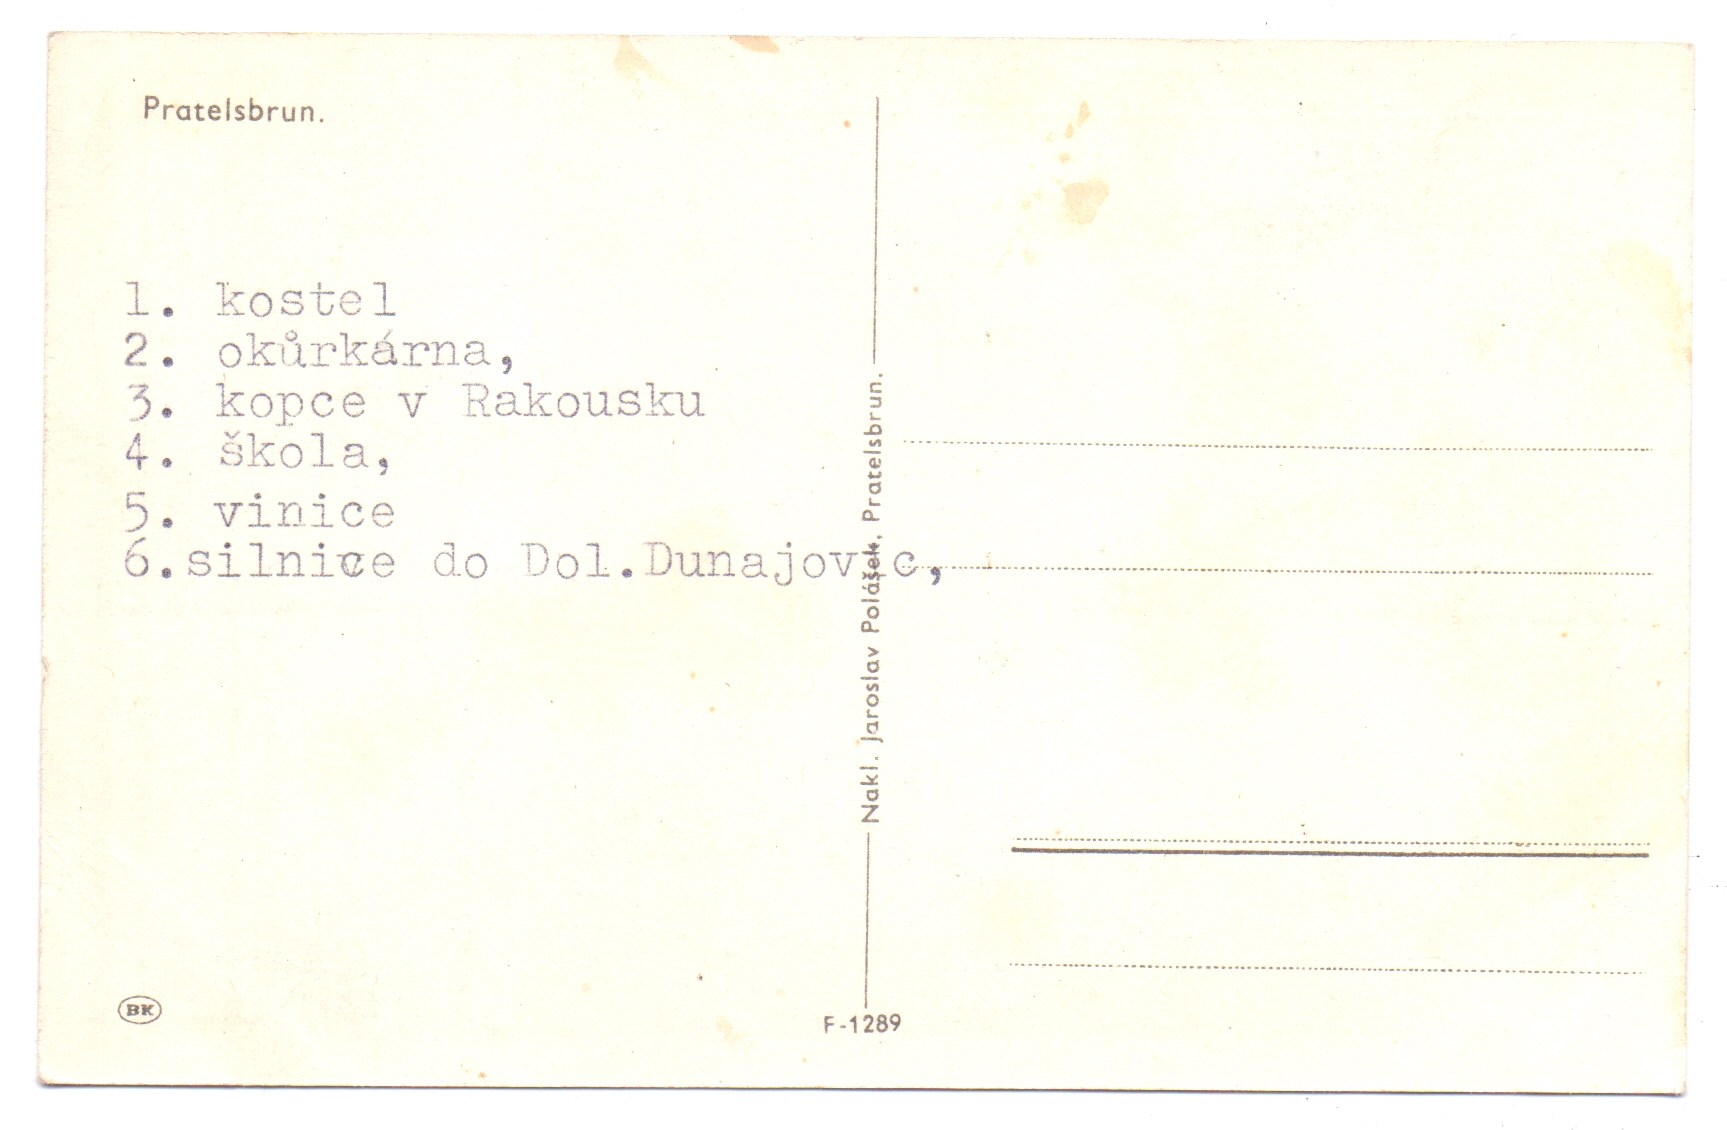 Prátlsbrun - pohlednice, rubová strana s textem Pratelsbrun, neprošlá poštou. Zdroj: Peter Frank, Stuttgart – sbírka Mušov